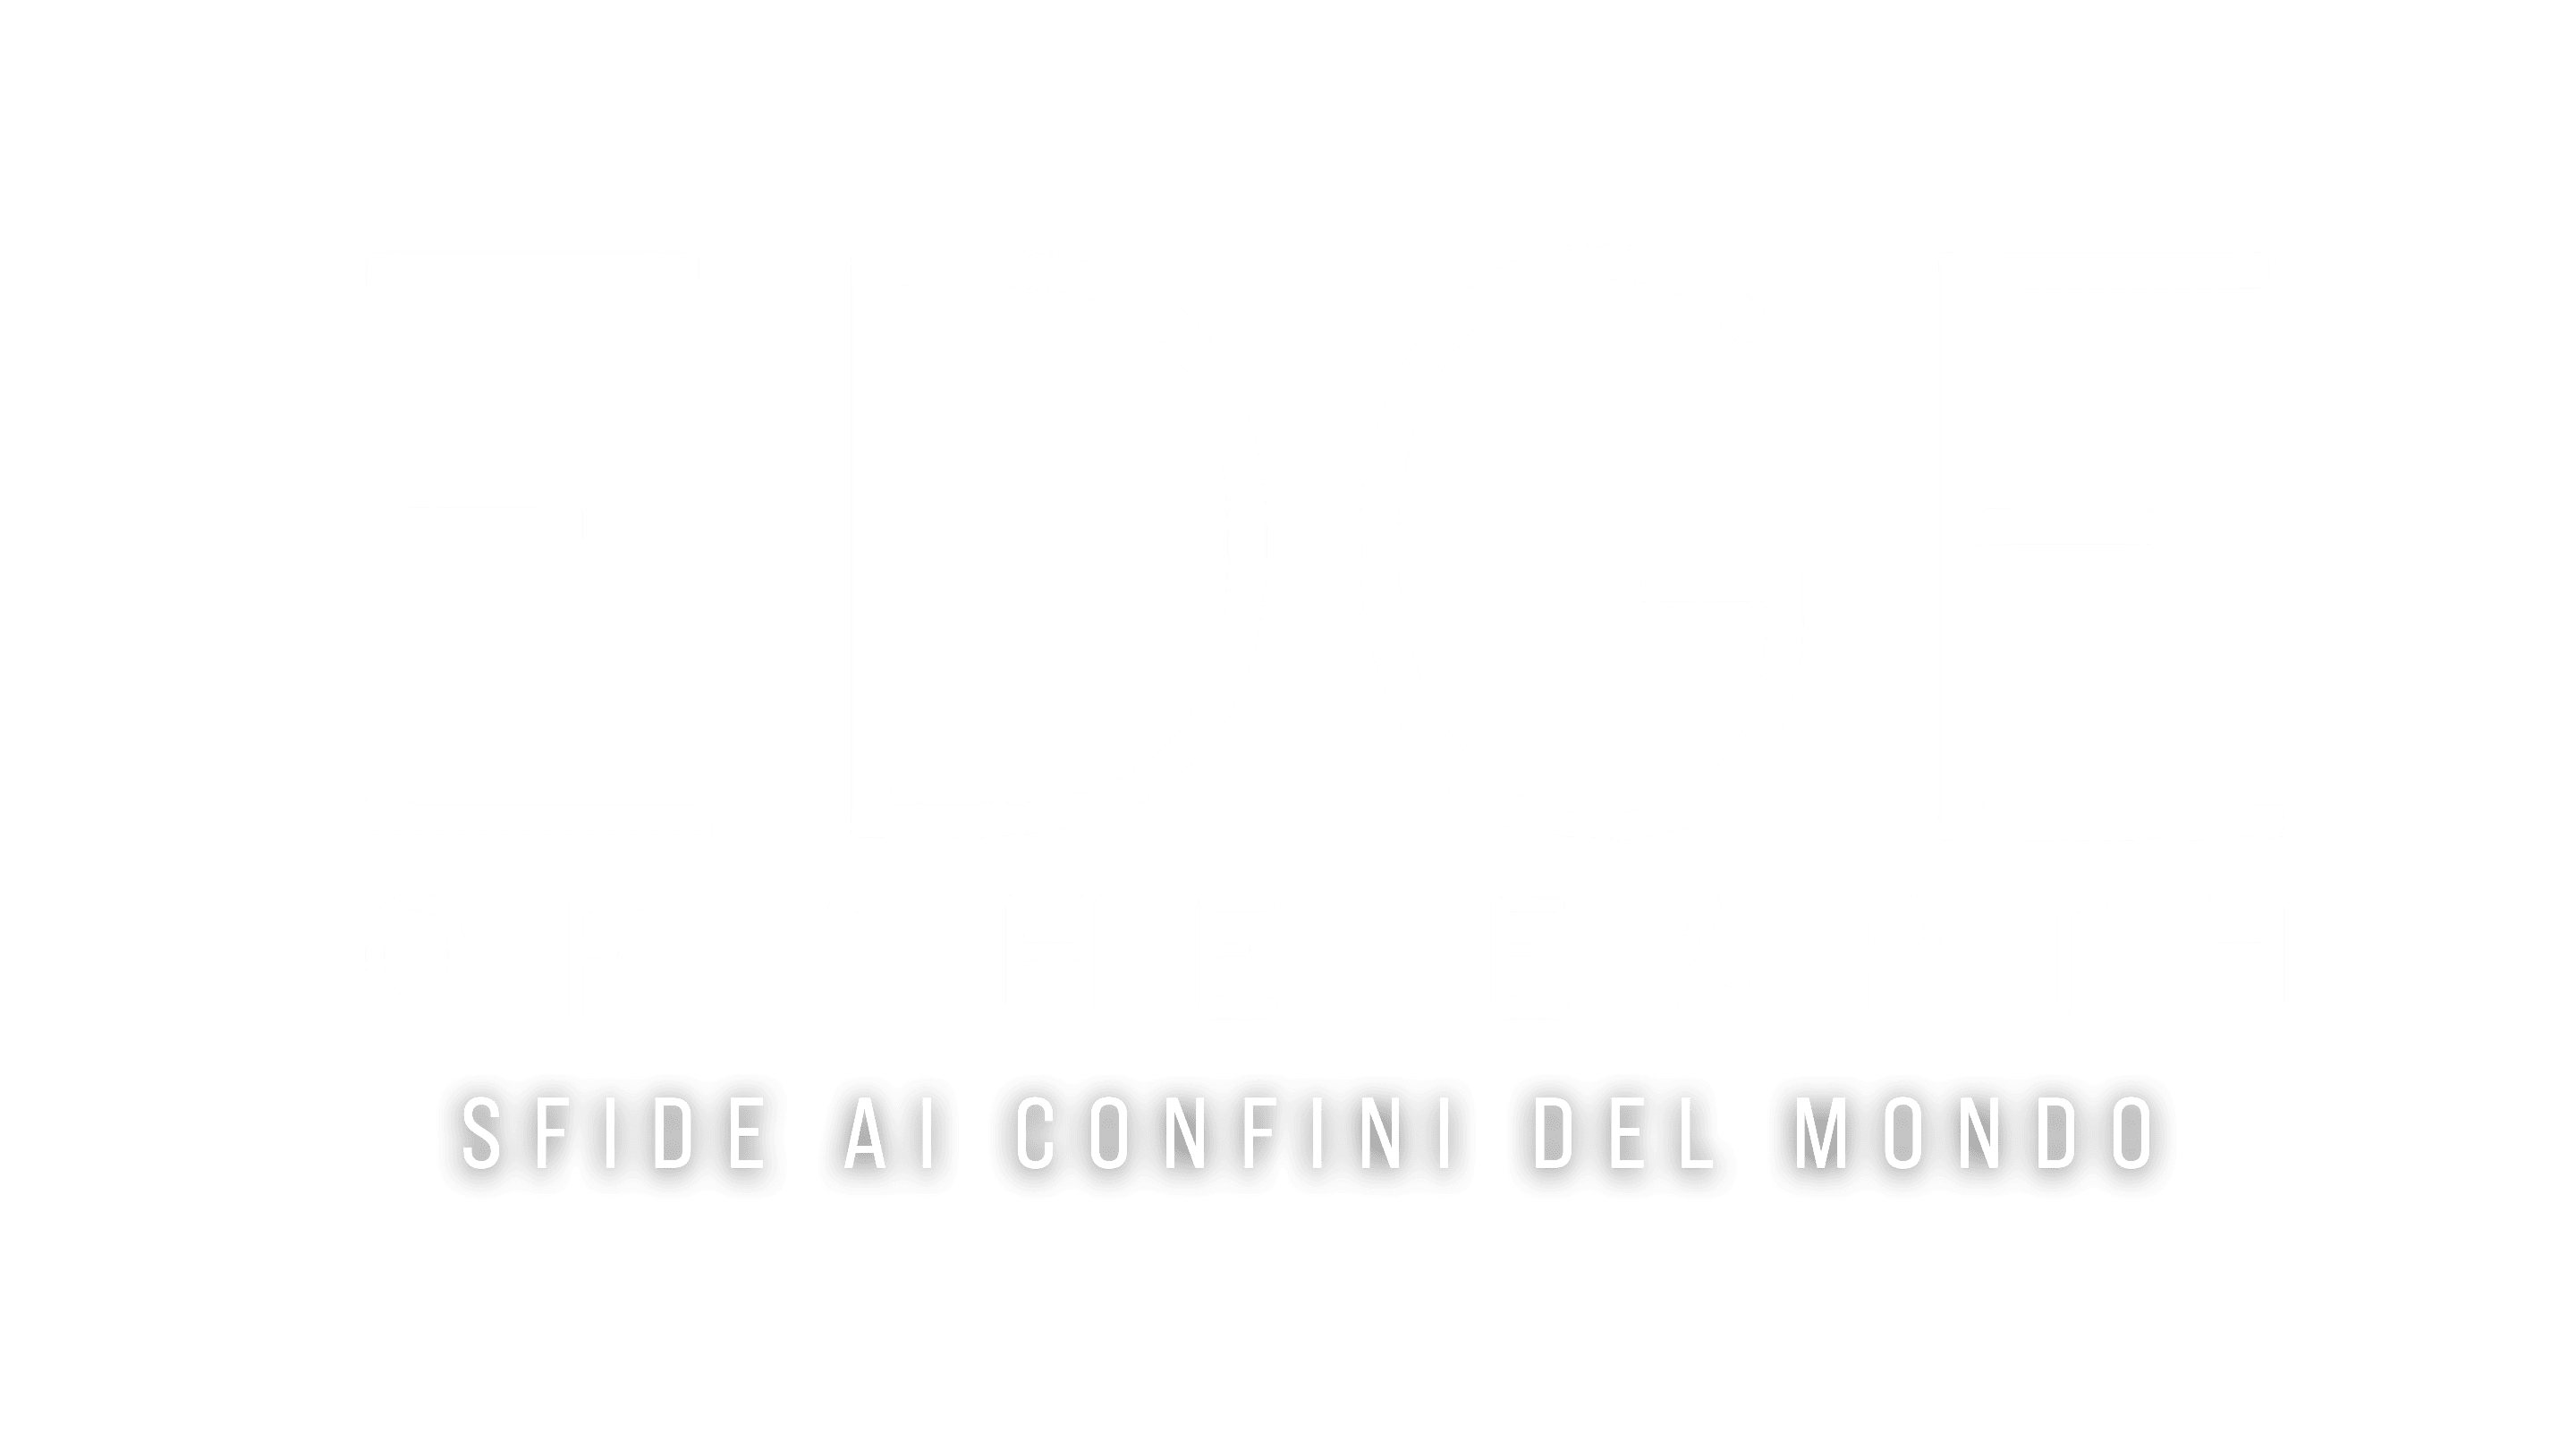 Edge of the Earth - Sfide ai confini del mondo